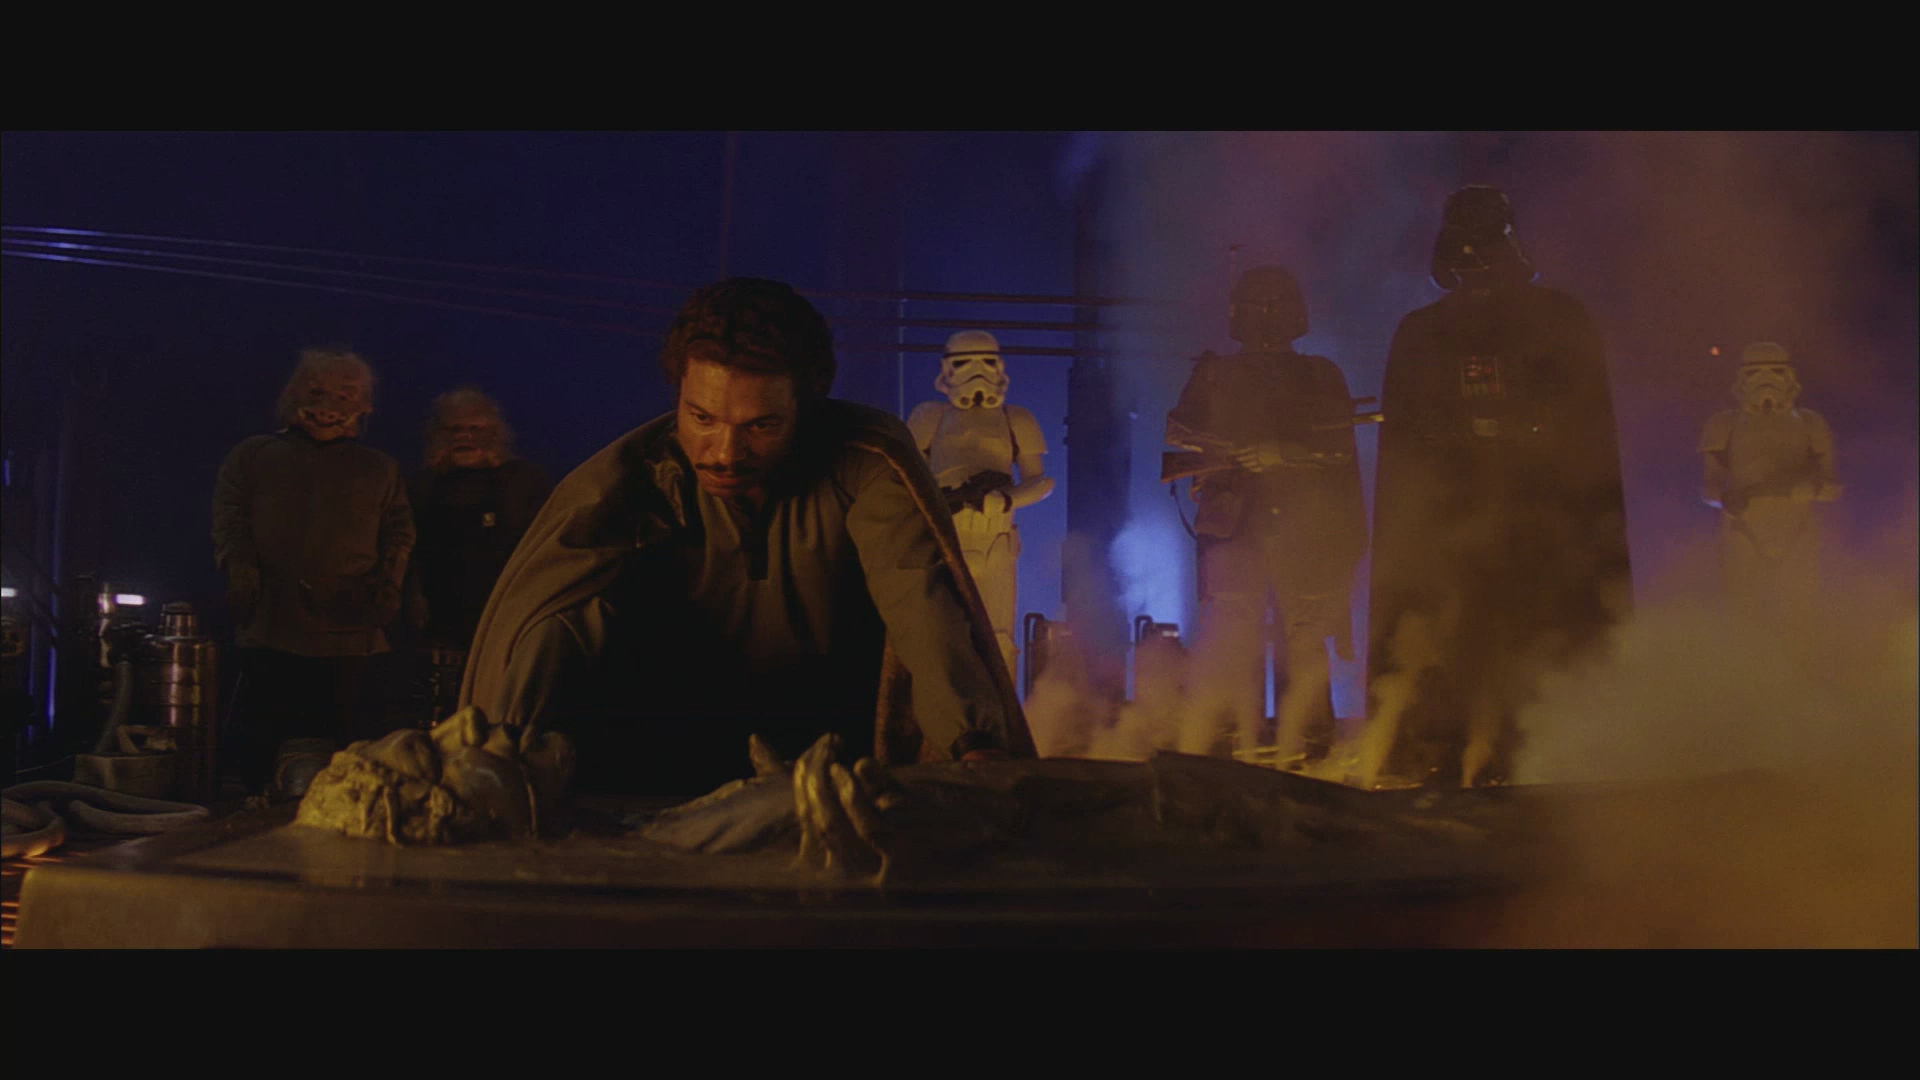 Star Wars, Darth Vader, Boba Fett, screenshots, Han Solo, Lando Calrissian - desktop wallpaper